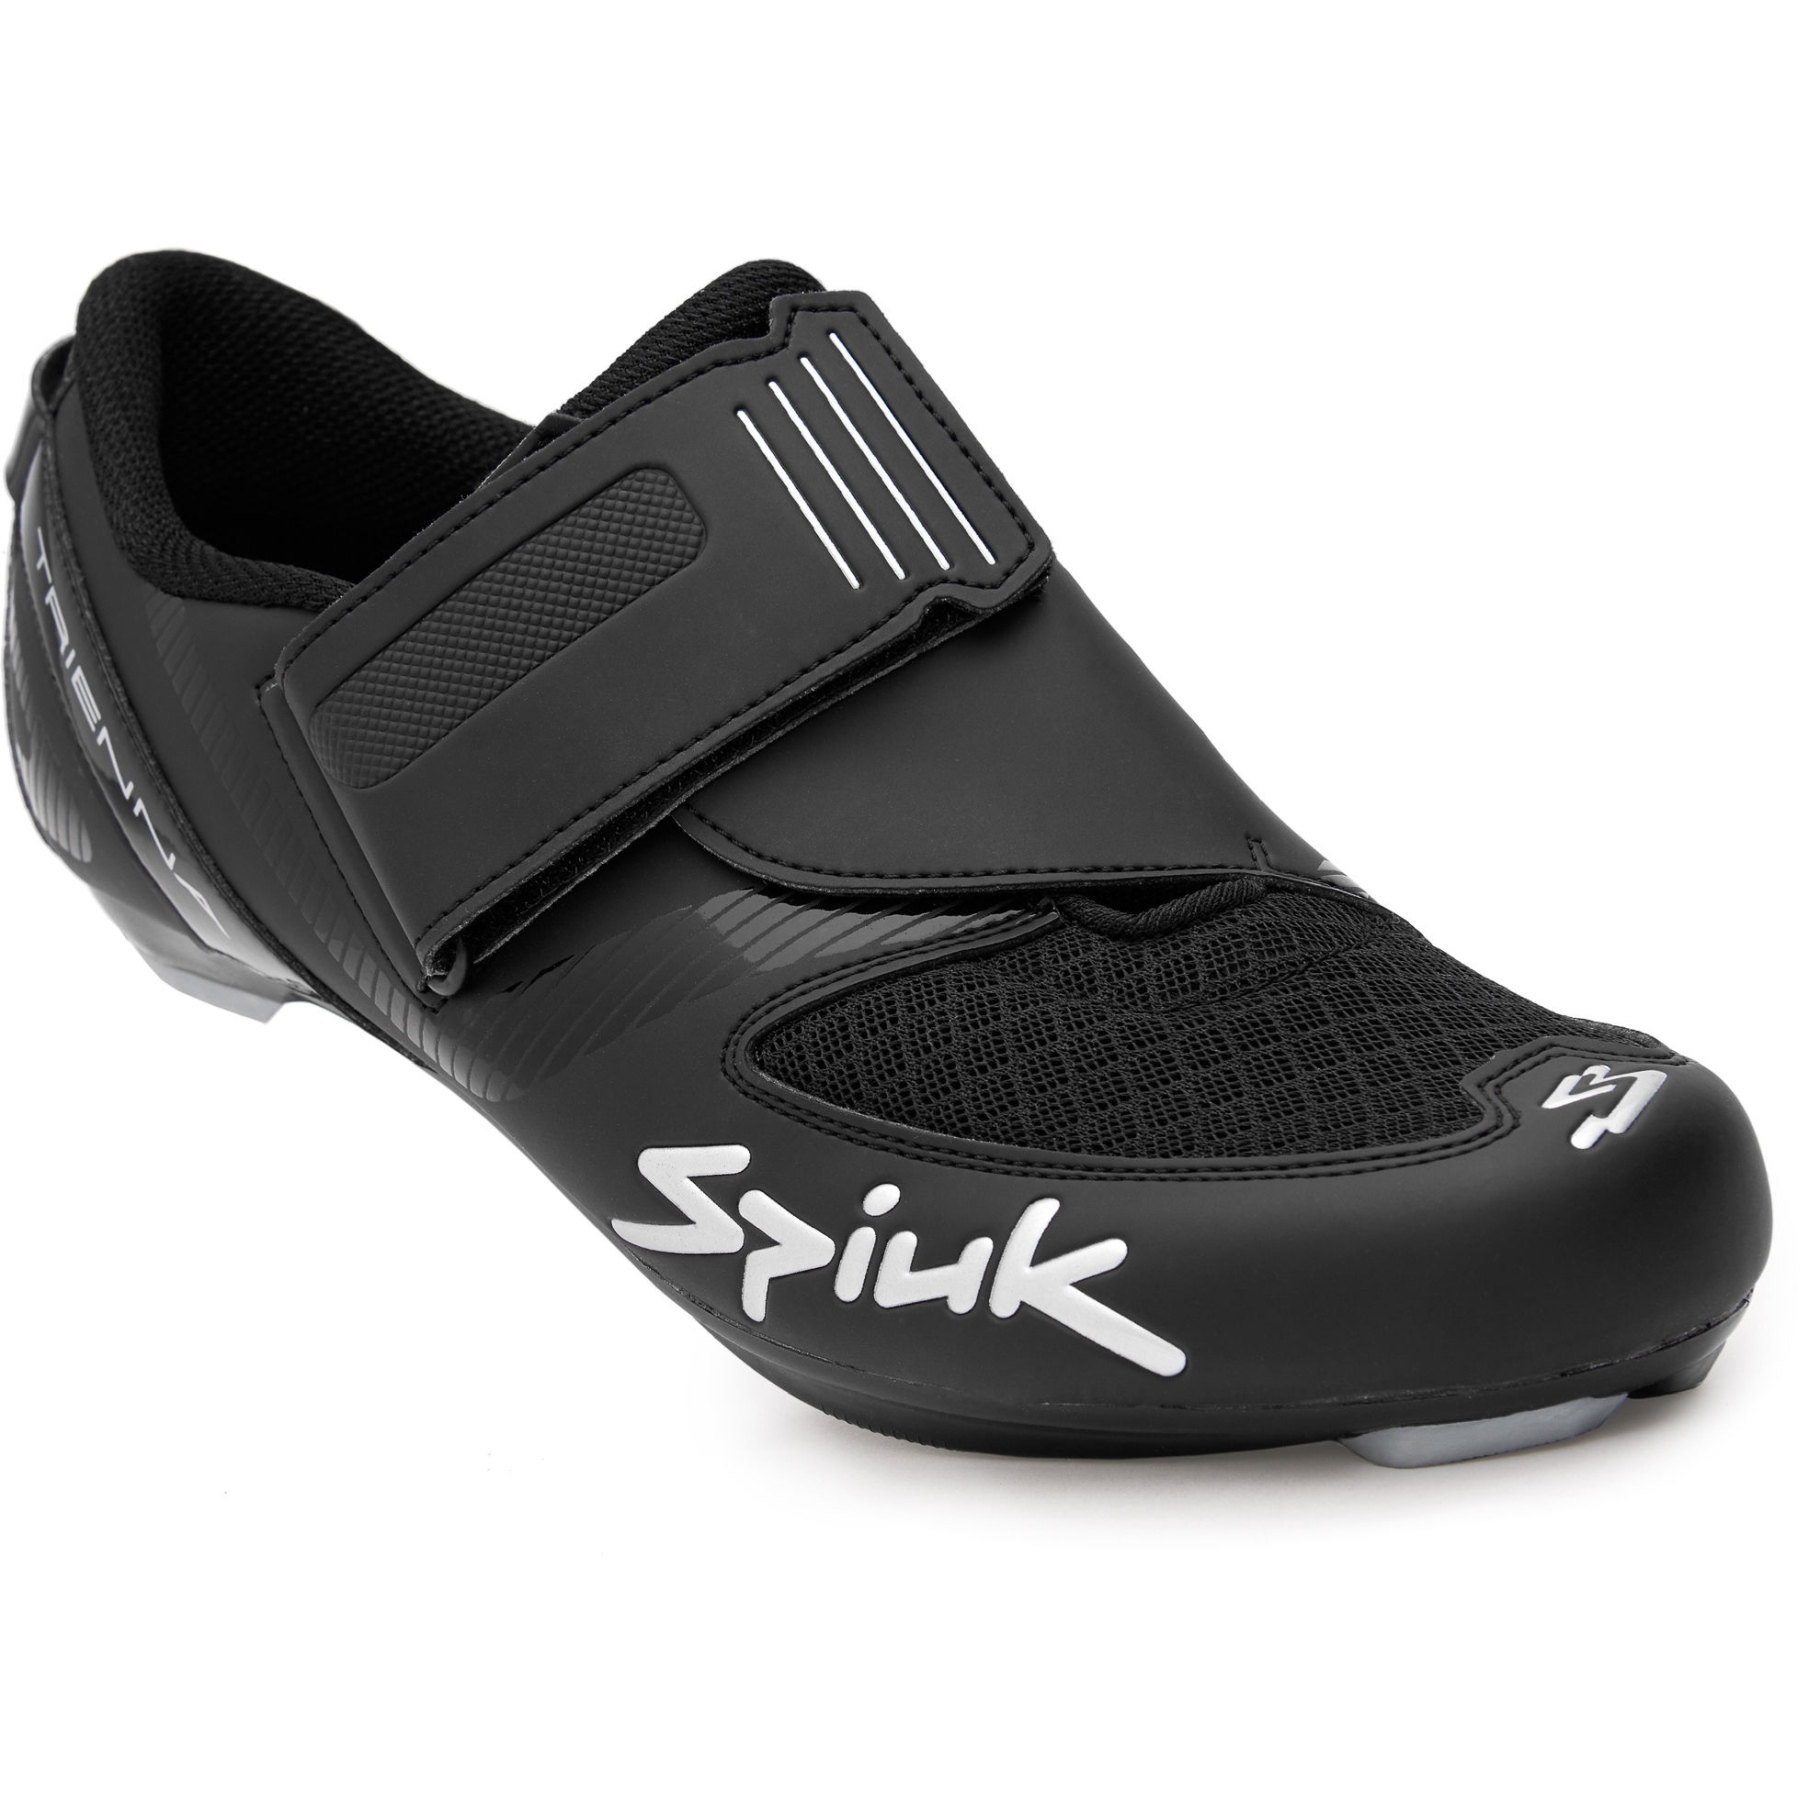 Produktbild von Spiuk Trienna Triathlon Schuh - black matt